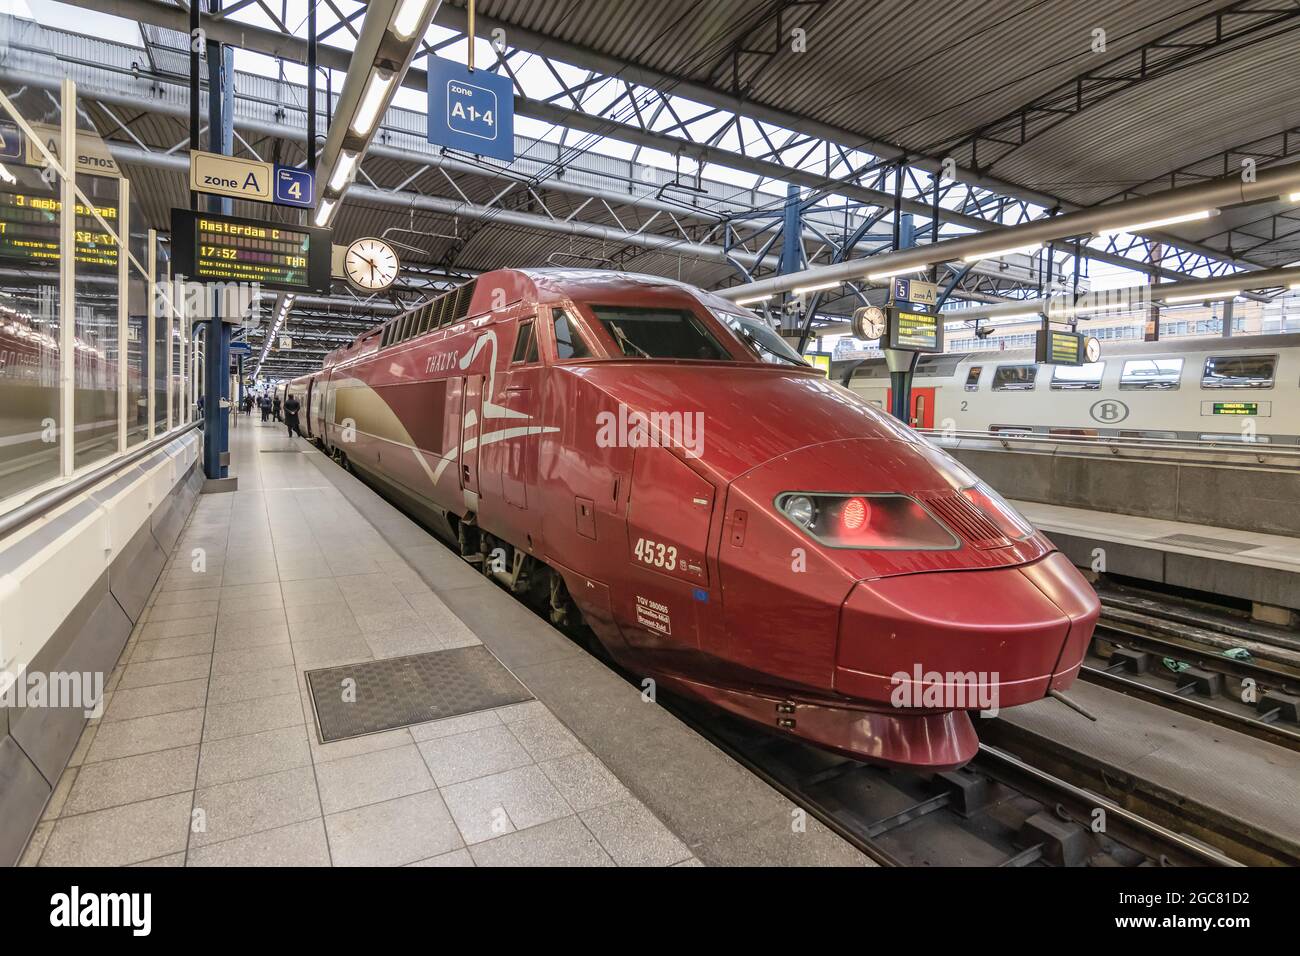 BRUSELAS, BÉLGICA - 12 de marzo de 2019: Tren internacional de alta velocidad Thalys llegando a la estación de tren Bruselas-Sur (Bruxelles-Midi o Brussel-Zuid) Foto de stock